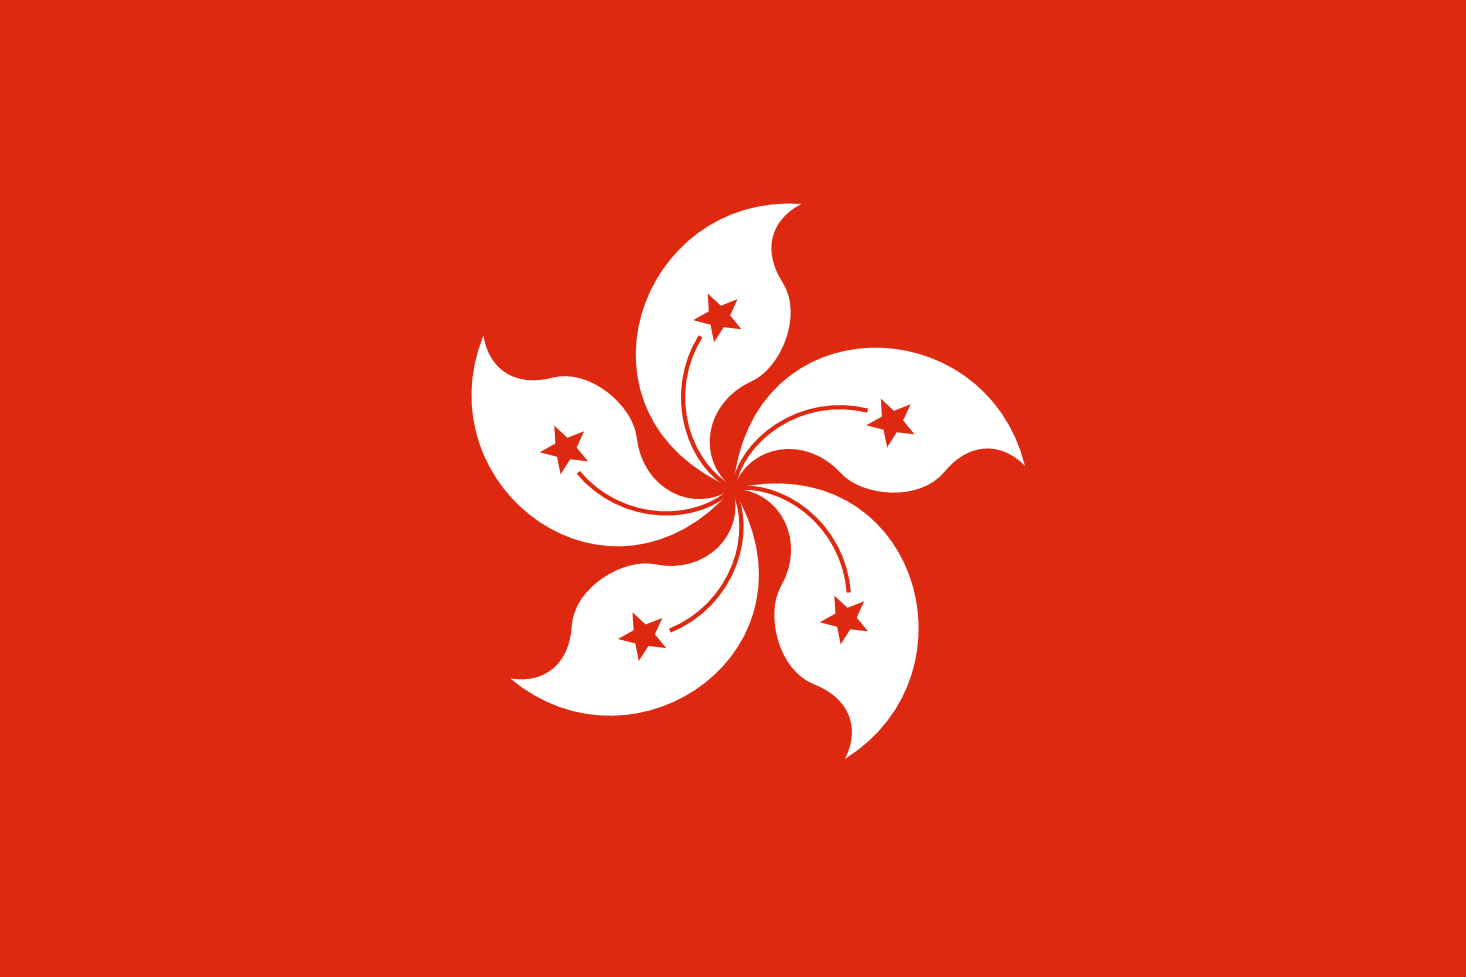 Imagem, bandeira do estado do estado da Hong Kong - na resolucao de 1466x977 - Leste da Ásia